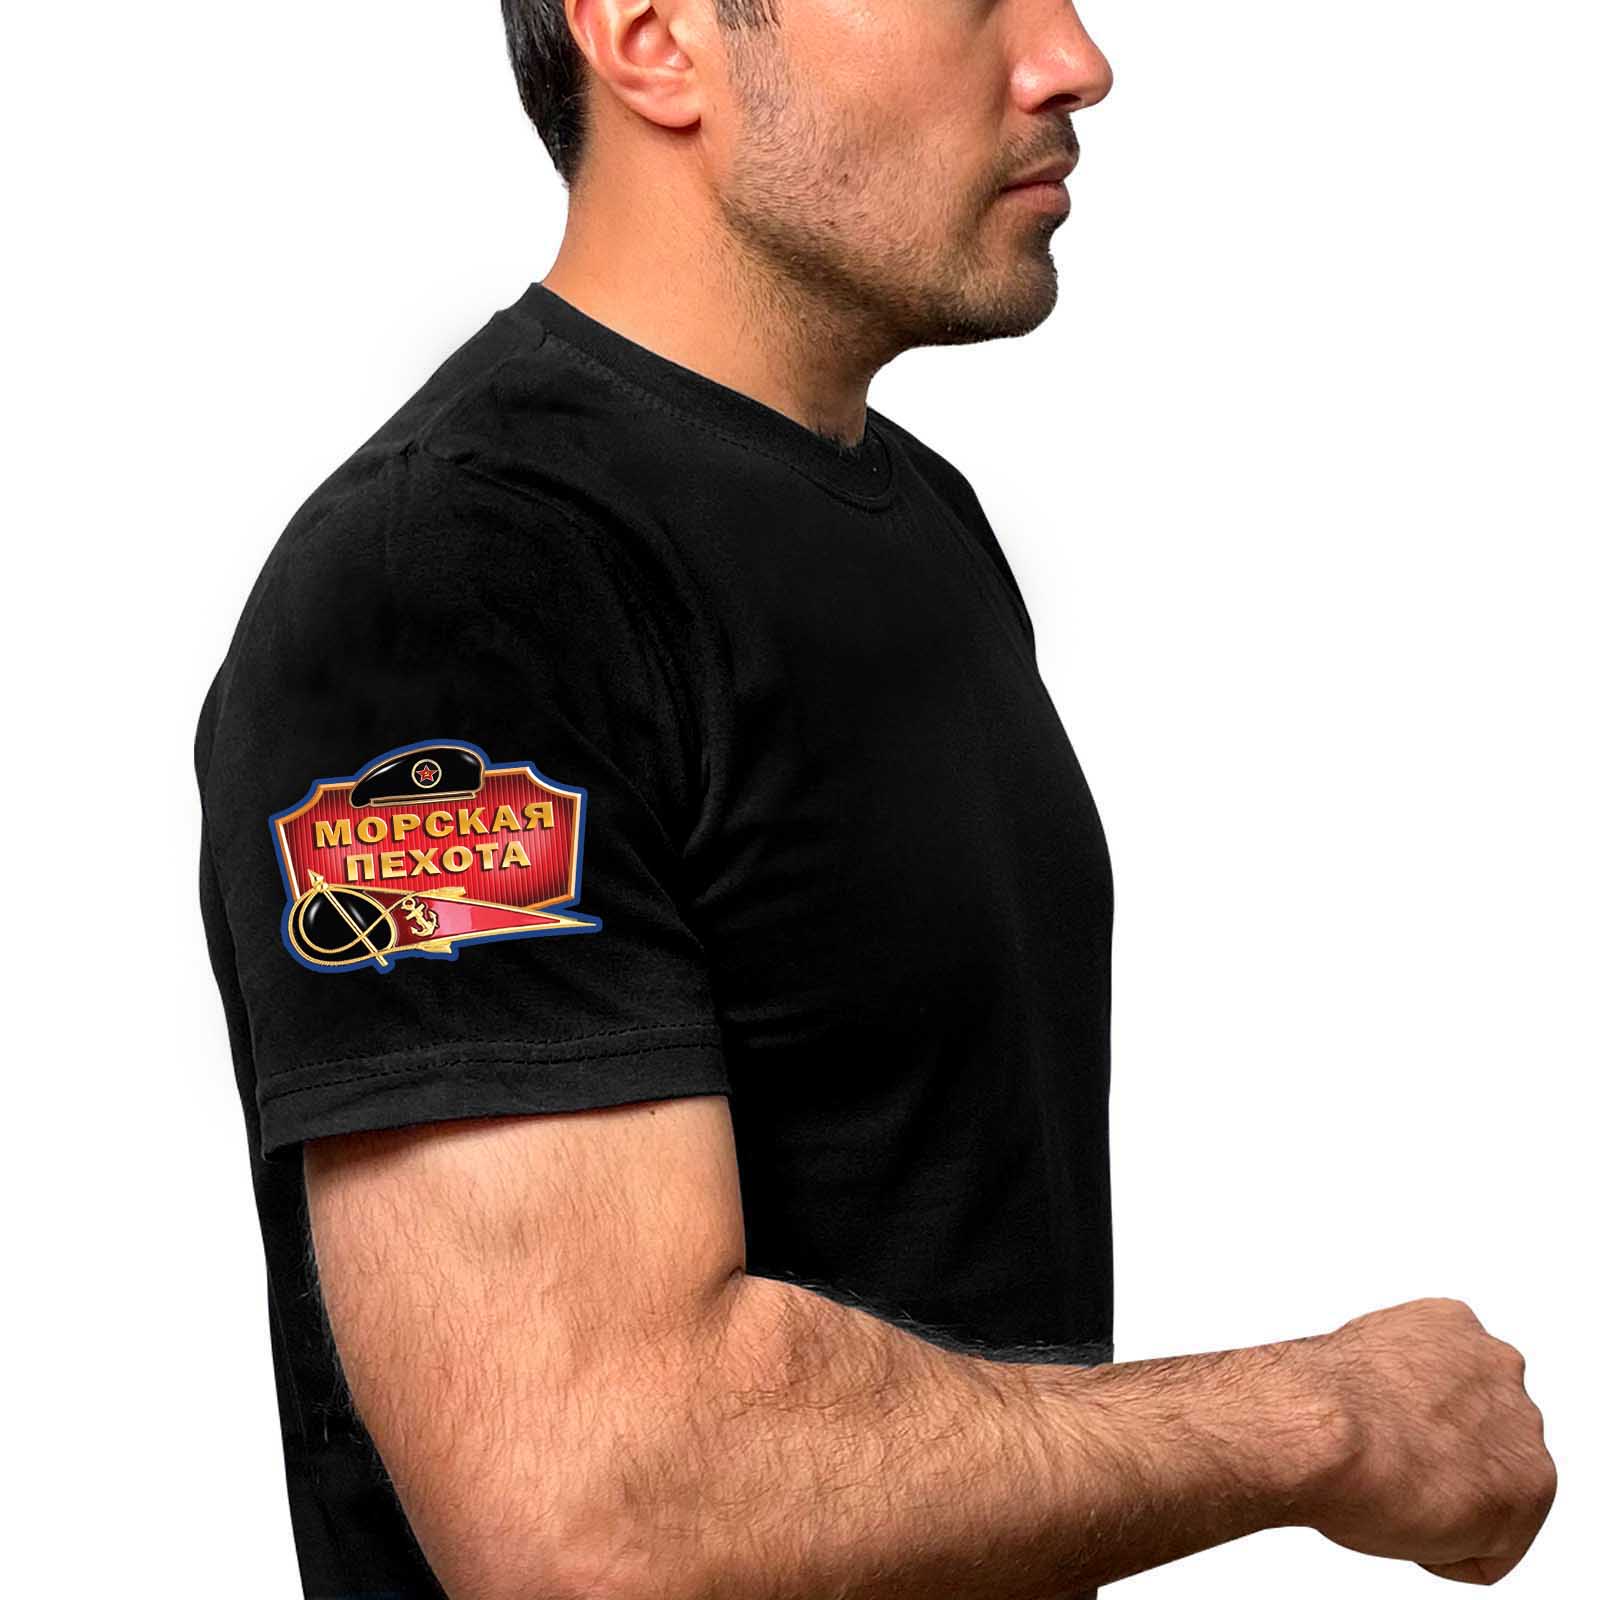 Чёрная футболка с термотрансфером "Морская пехота" на рукаве